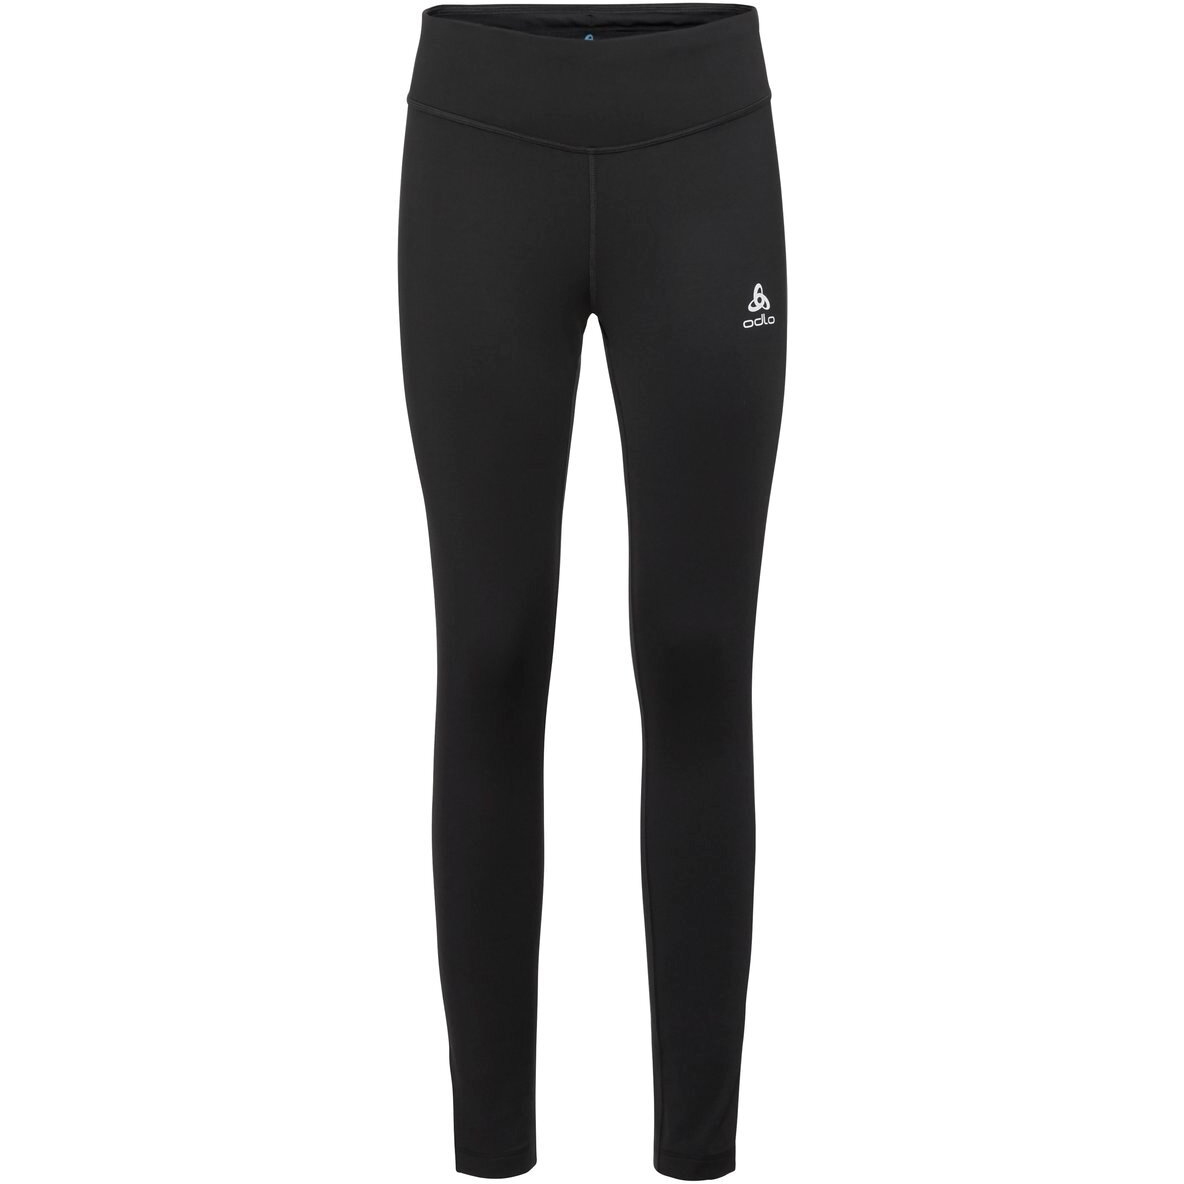 Produktbild von Odlo Essentials Warm Lauf- und Trainings-Tights Damen - schwarz